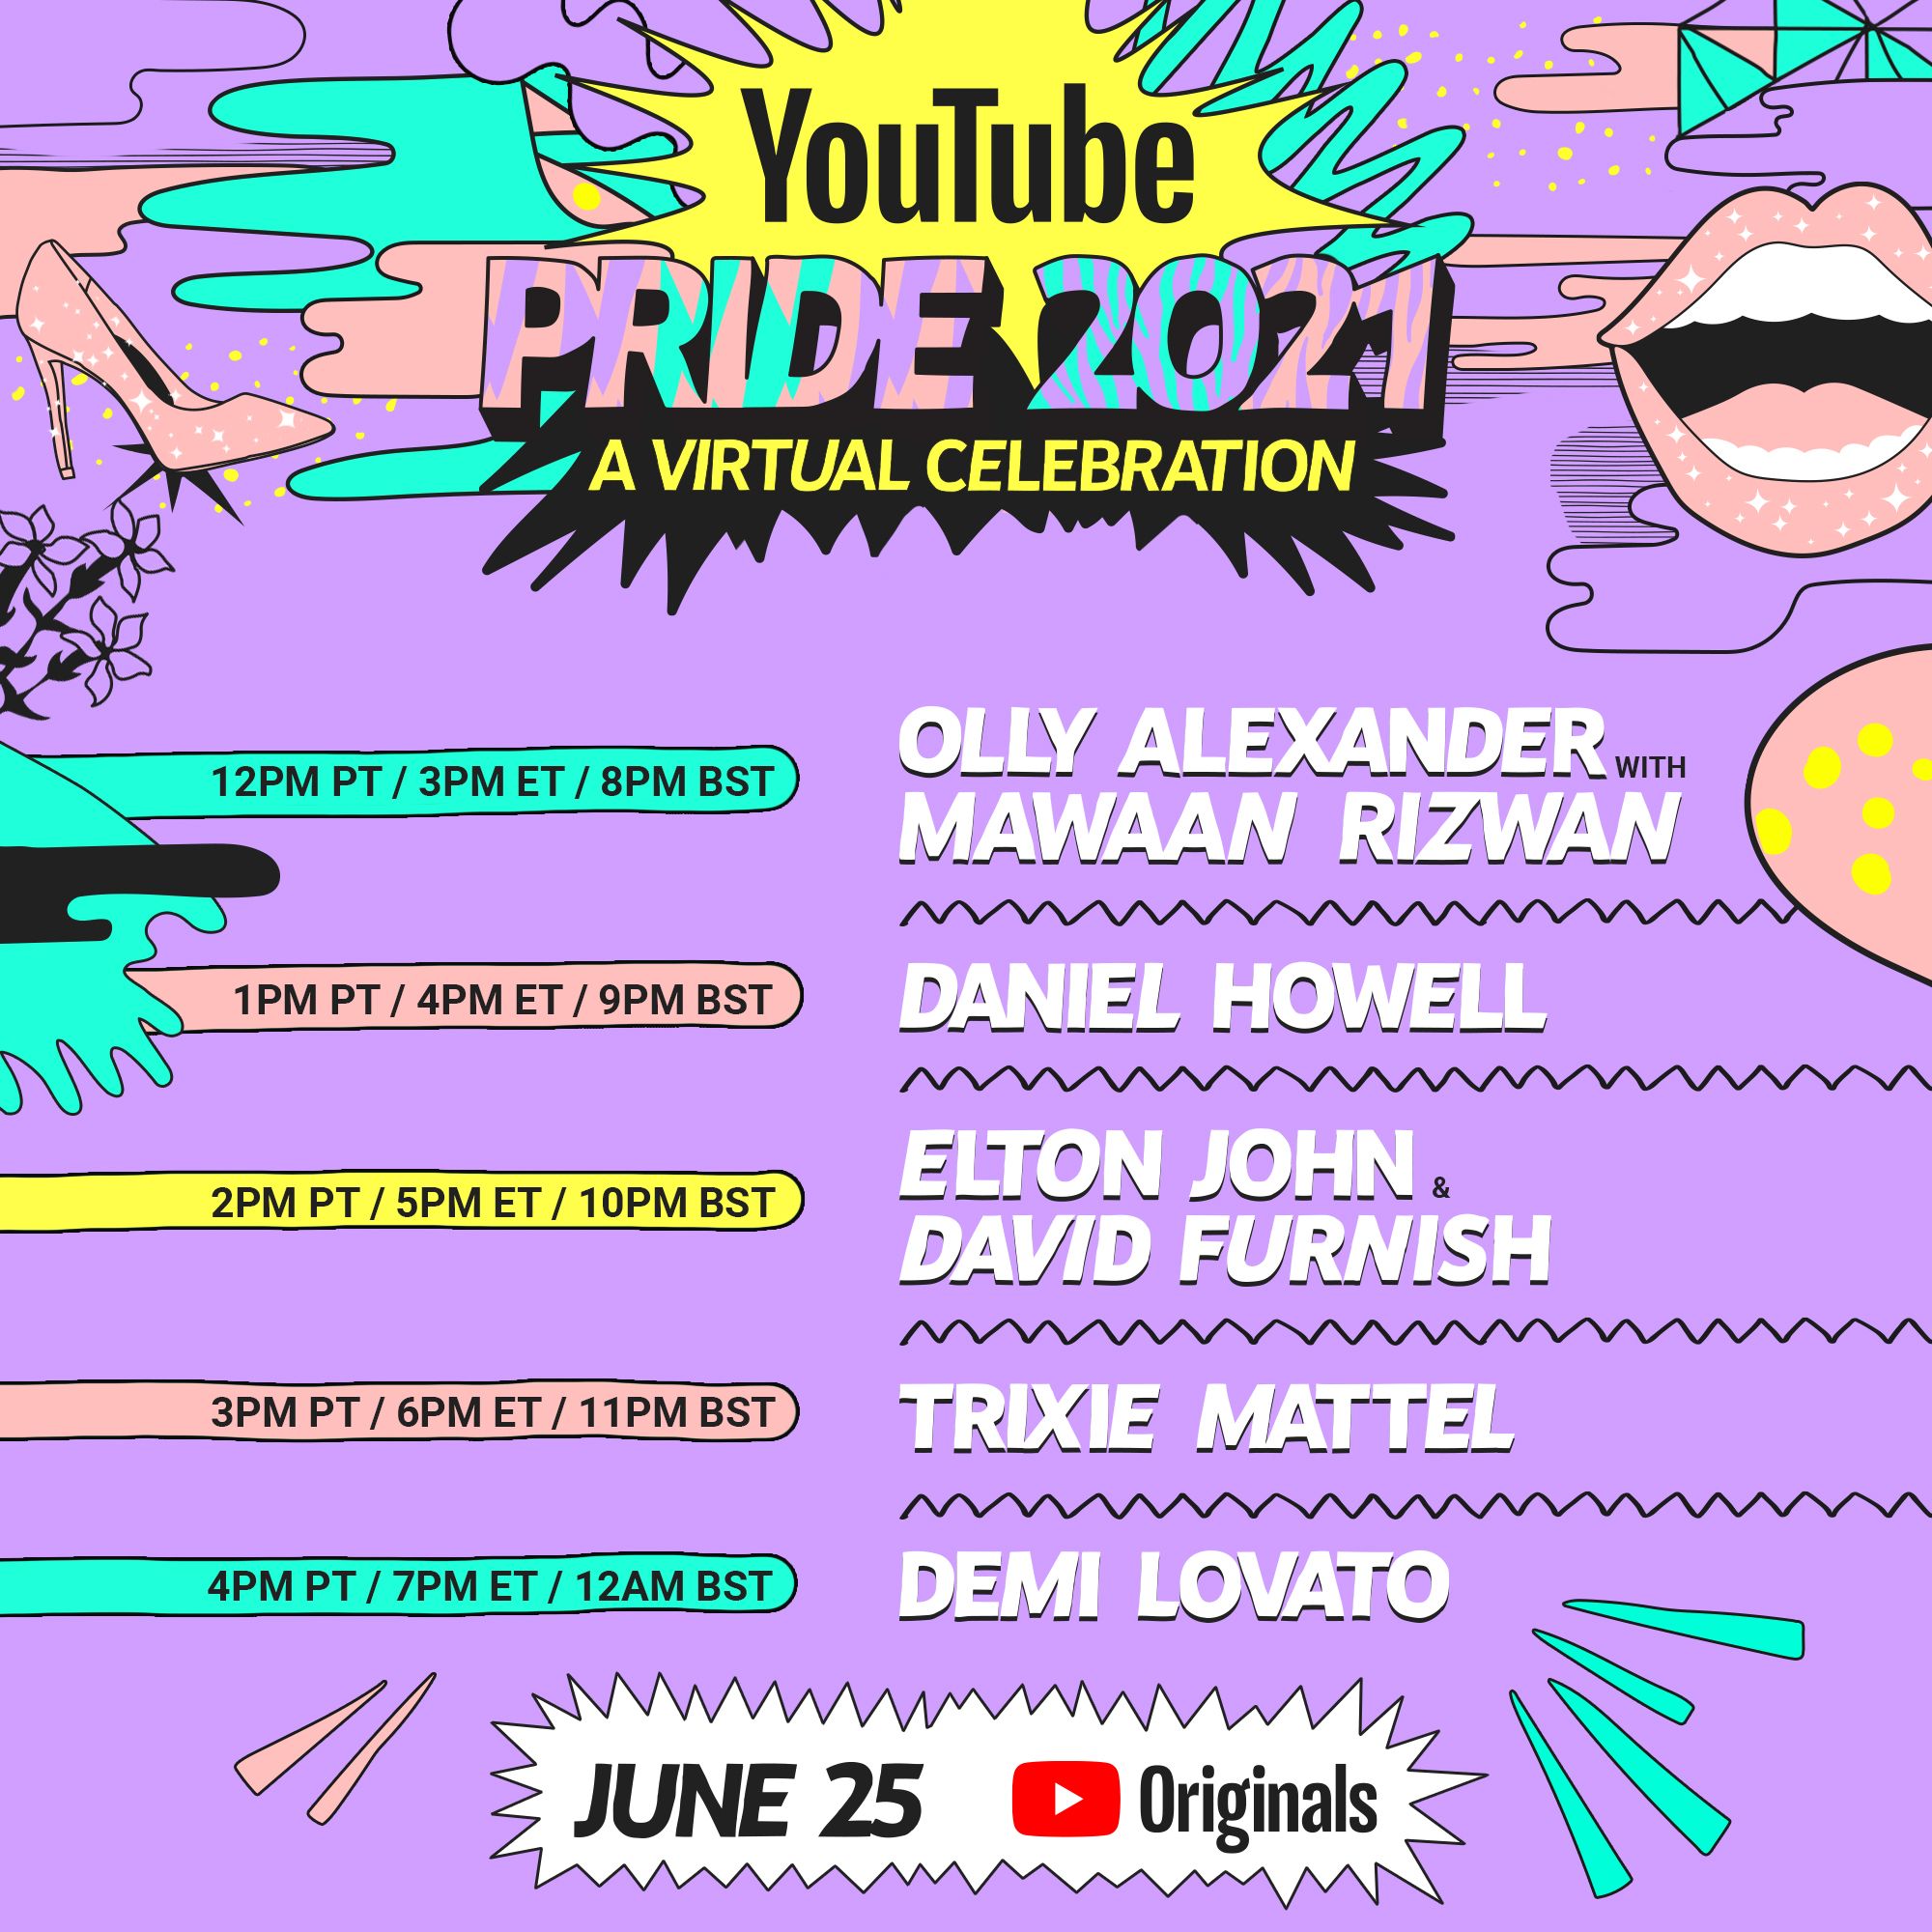 YouTube Pride 2021 with Demi Lovato & TCLA